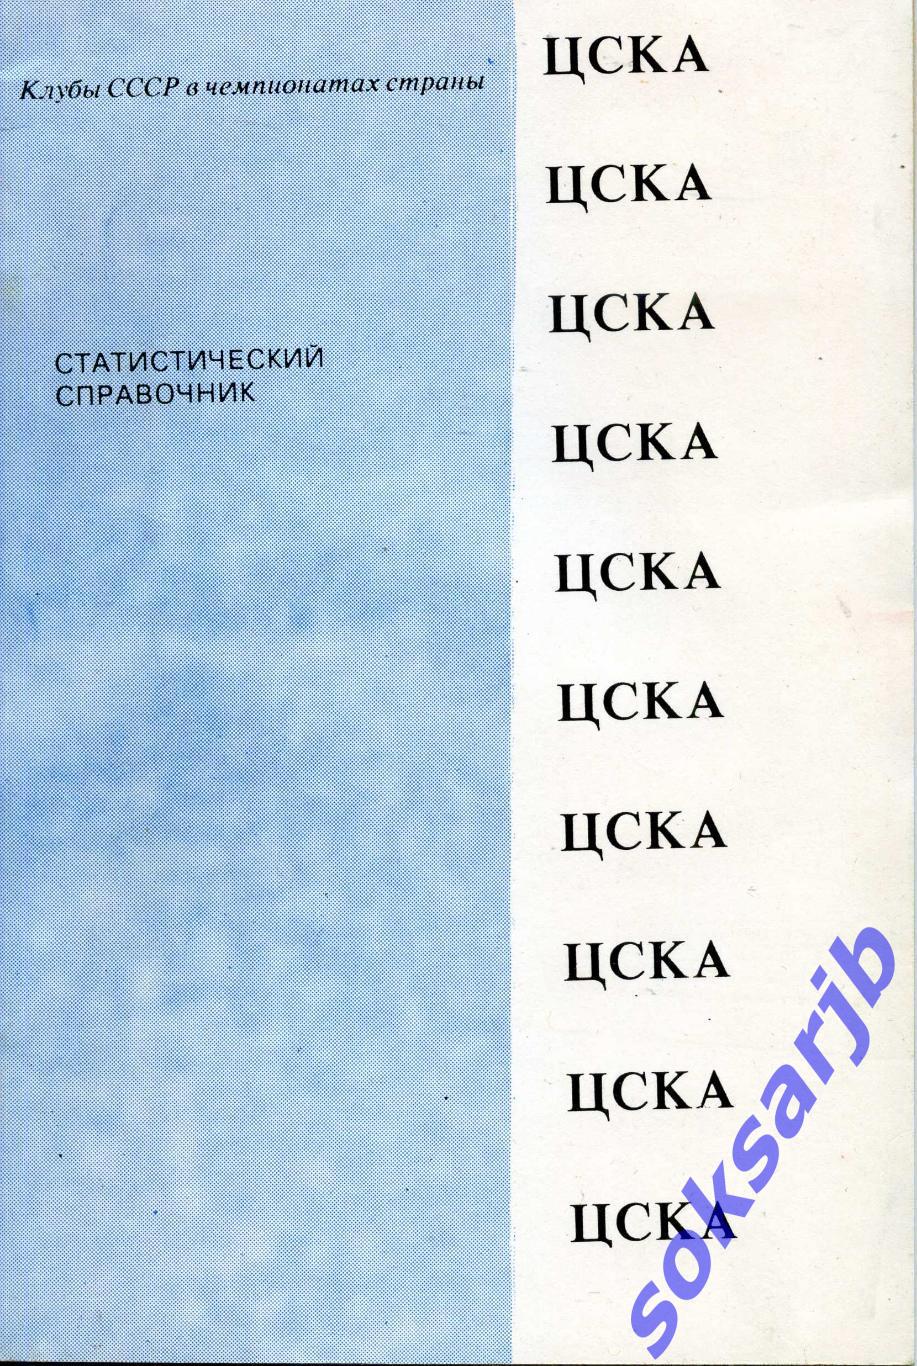 1991. ЦСКА Статистический справочник.